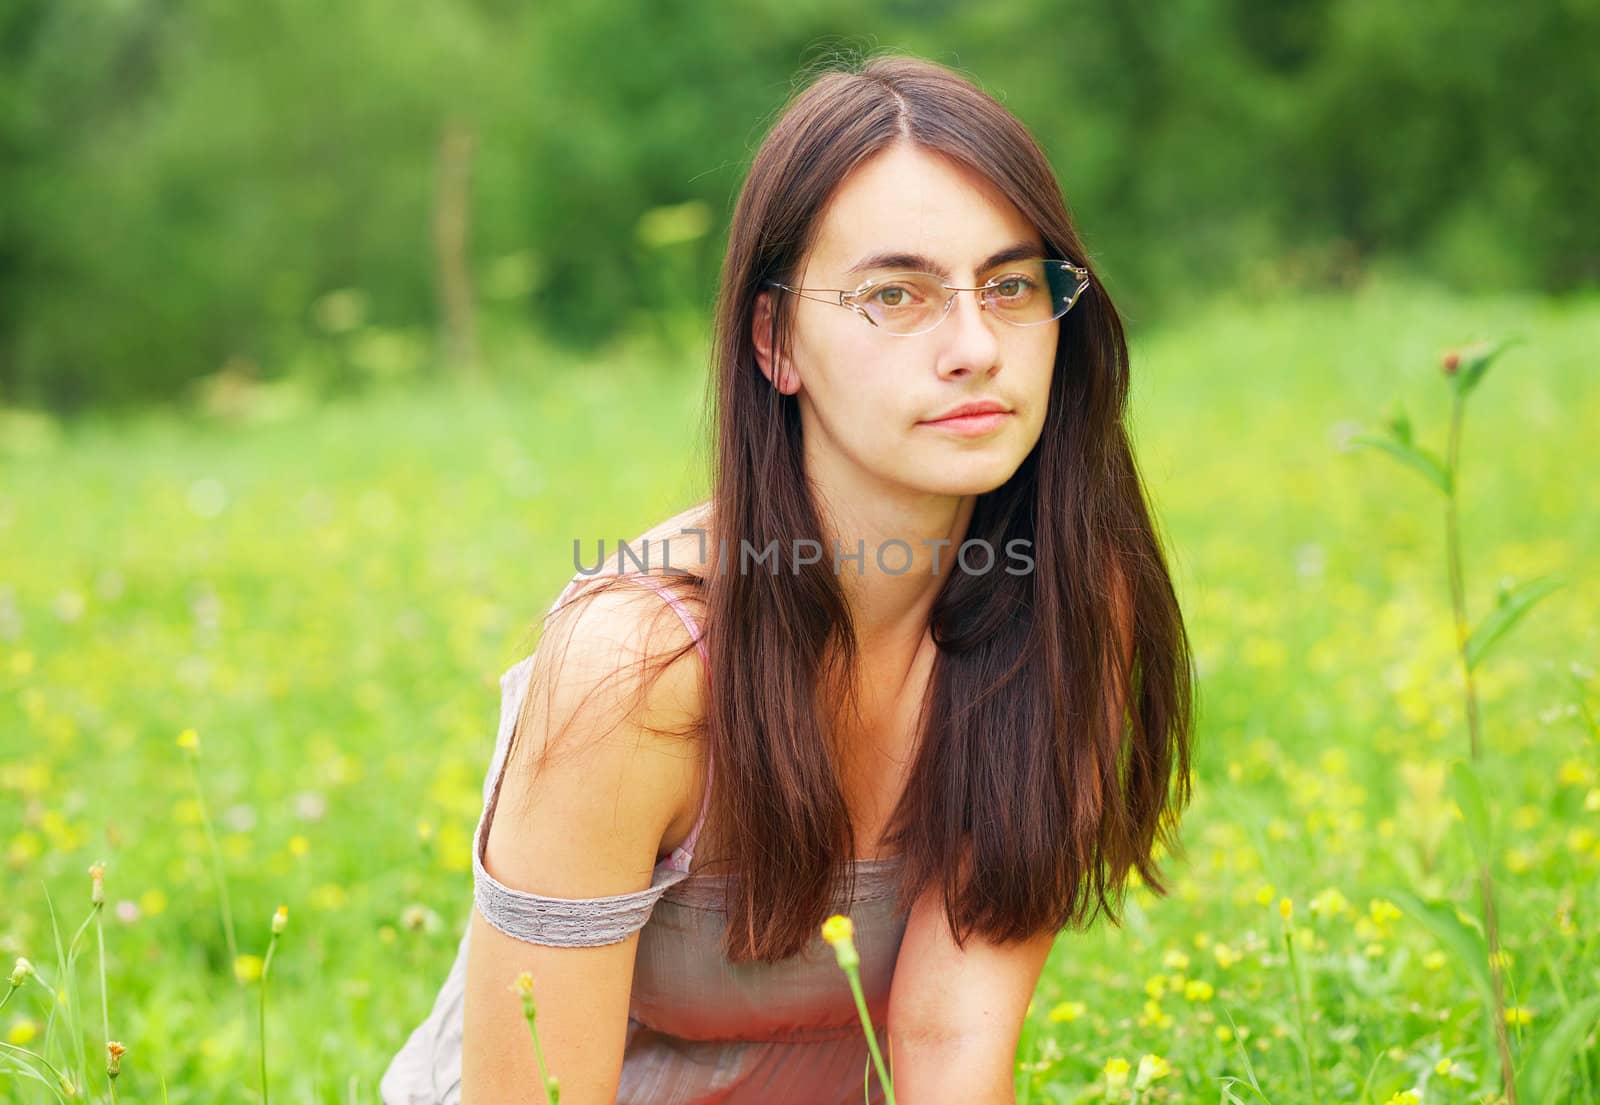 Beautiful woman on a green meadow by romanshyshak